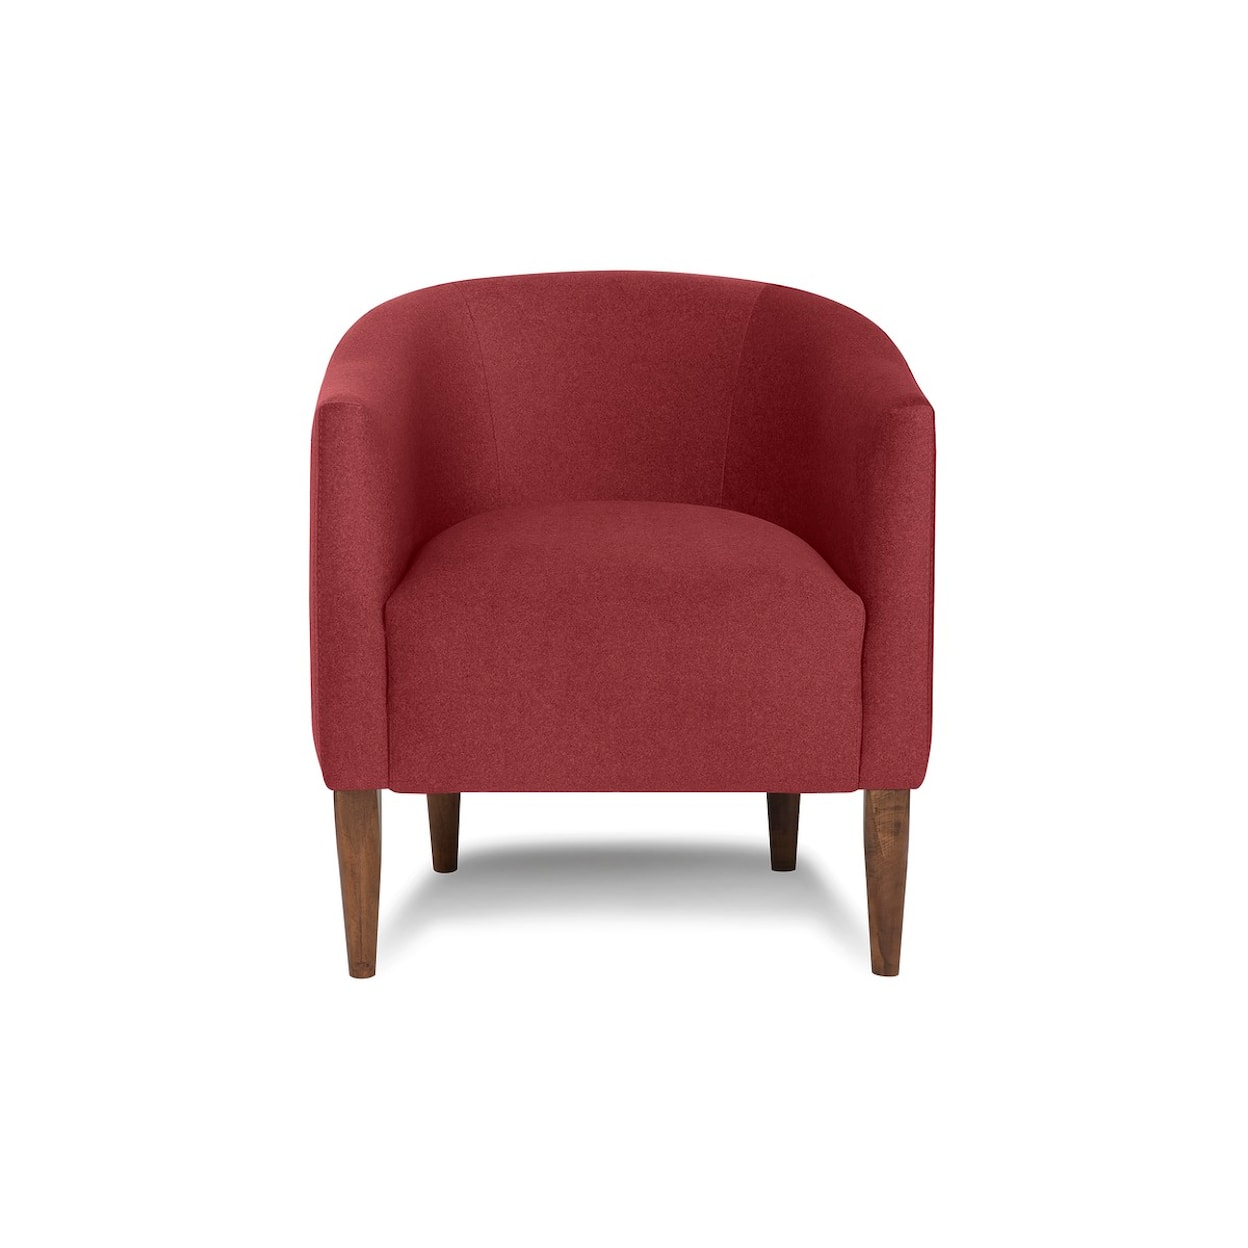 Palliser Kendall Kendall Upholstered Chair